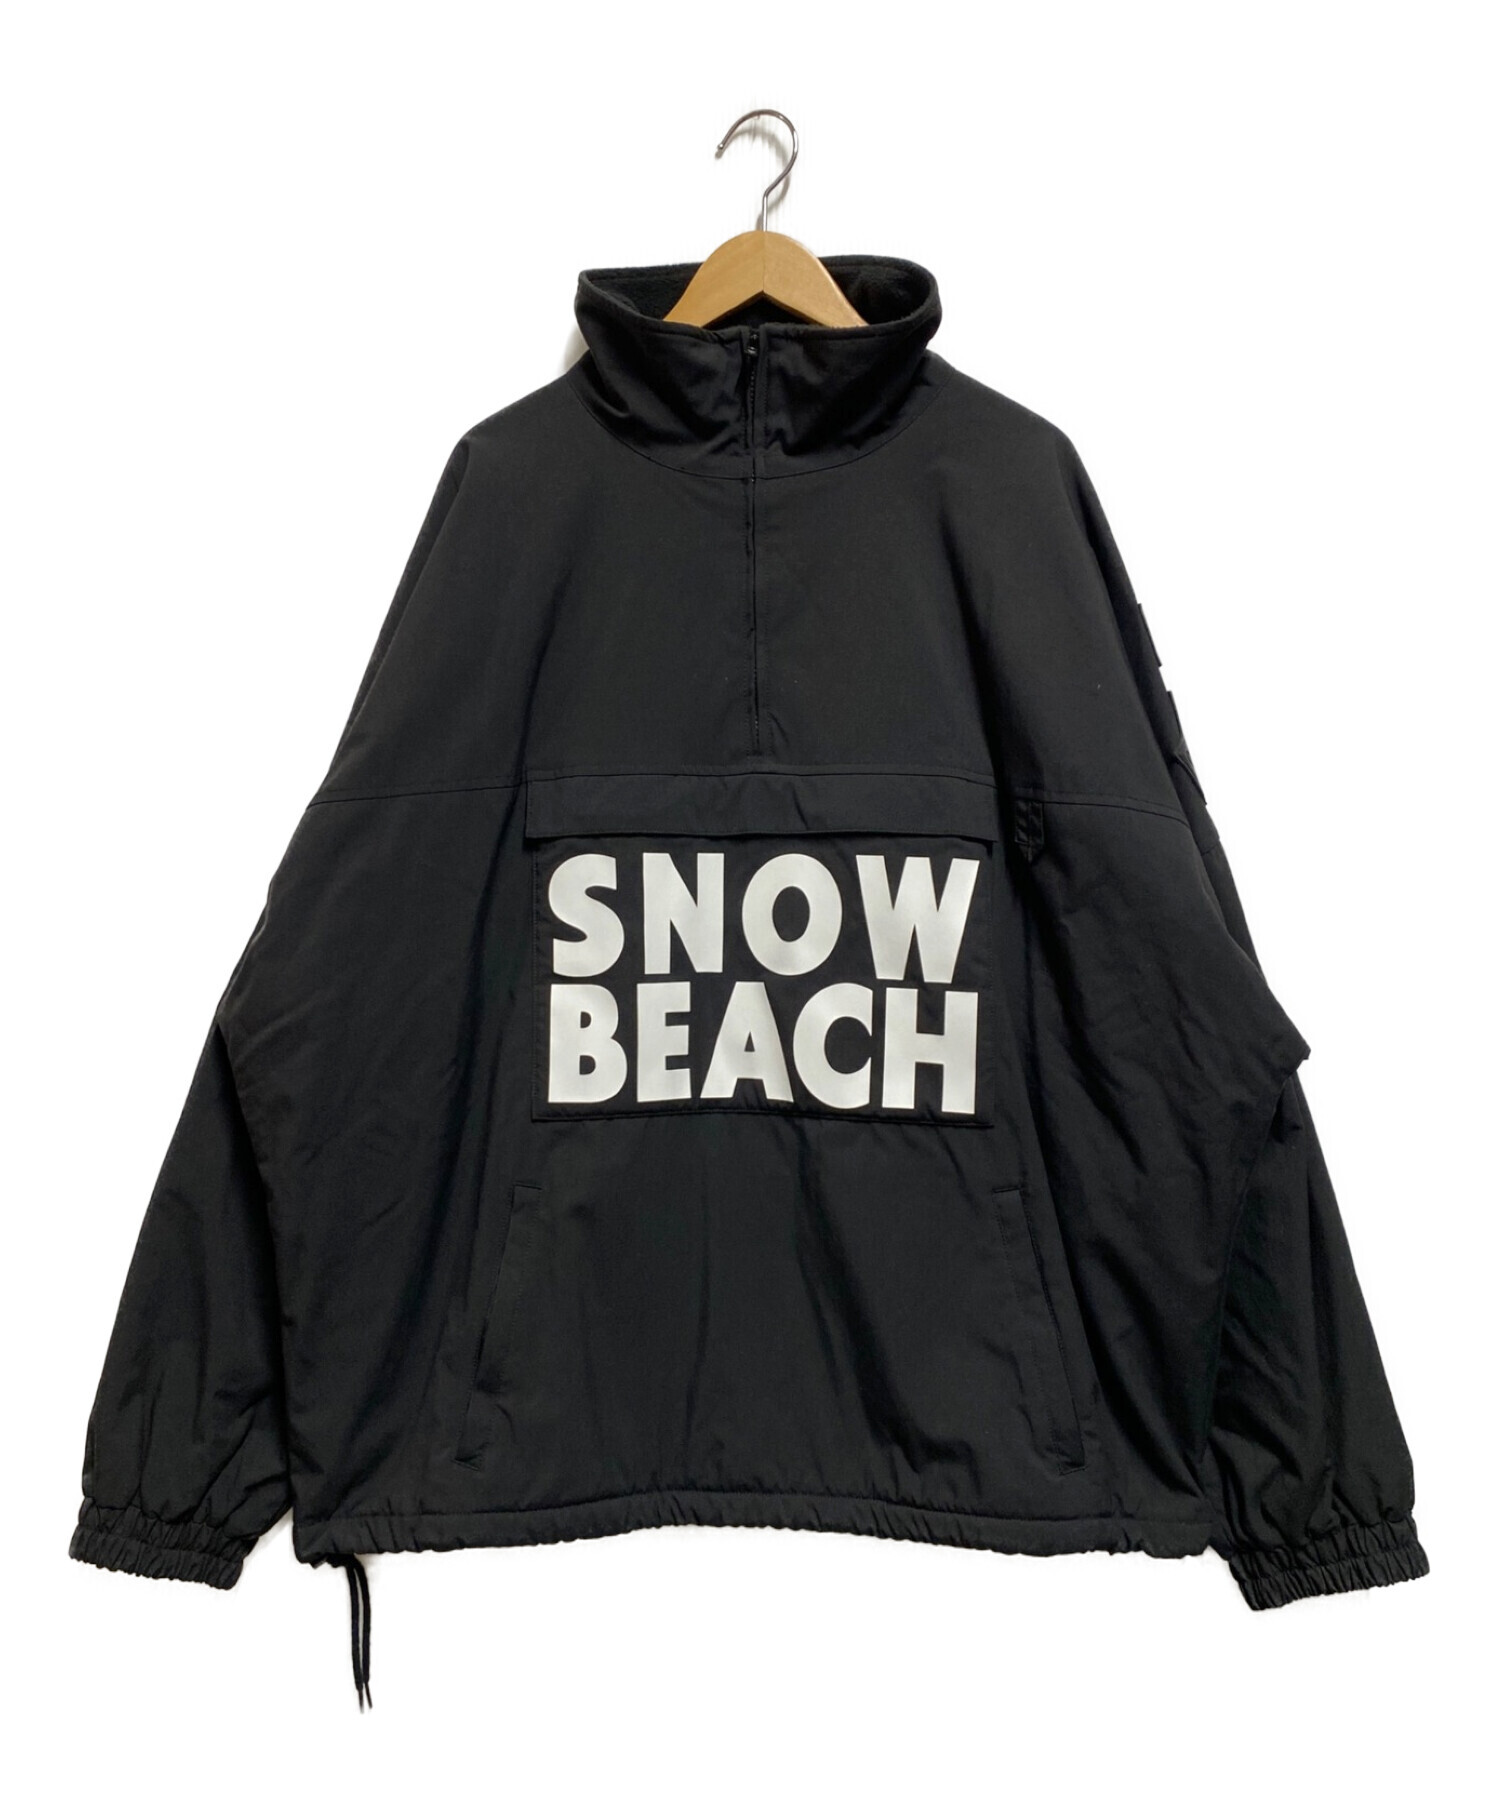 POLO RALPH LAUREN (ポロ・ラルフローレン) Snow Beach Pullover ブラック サイズ:L